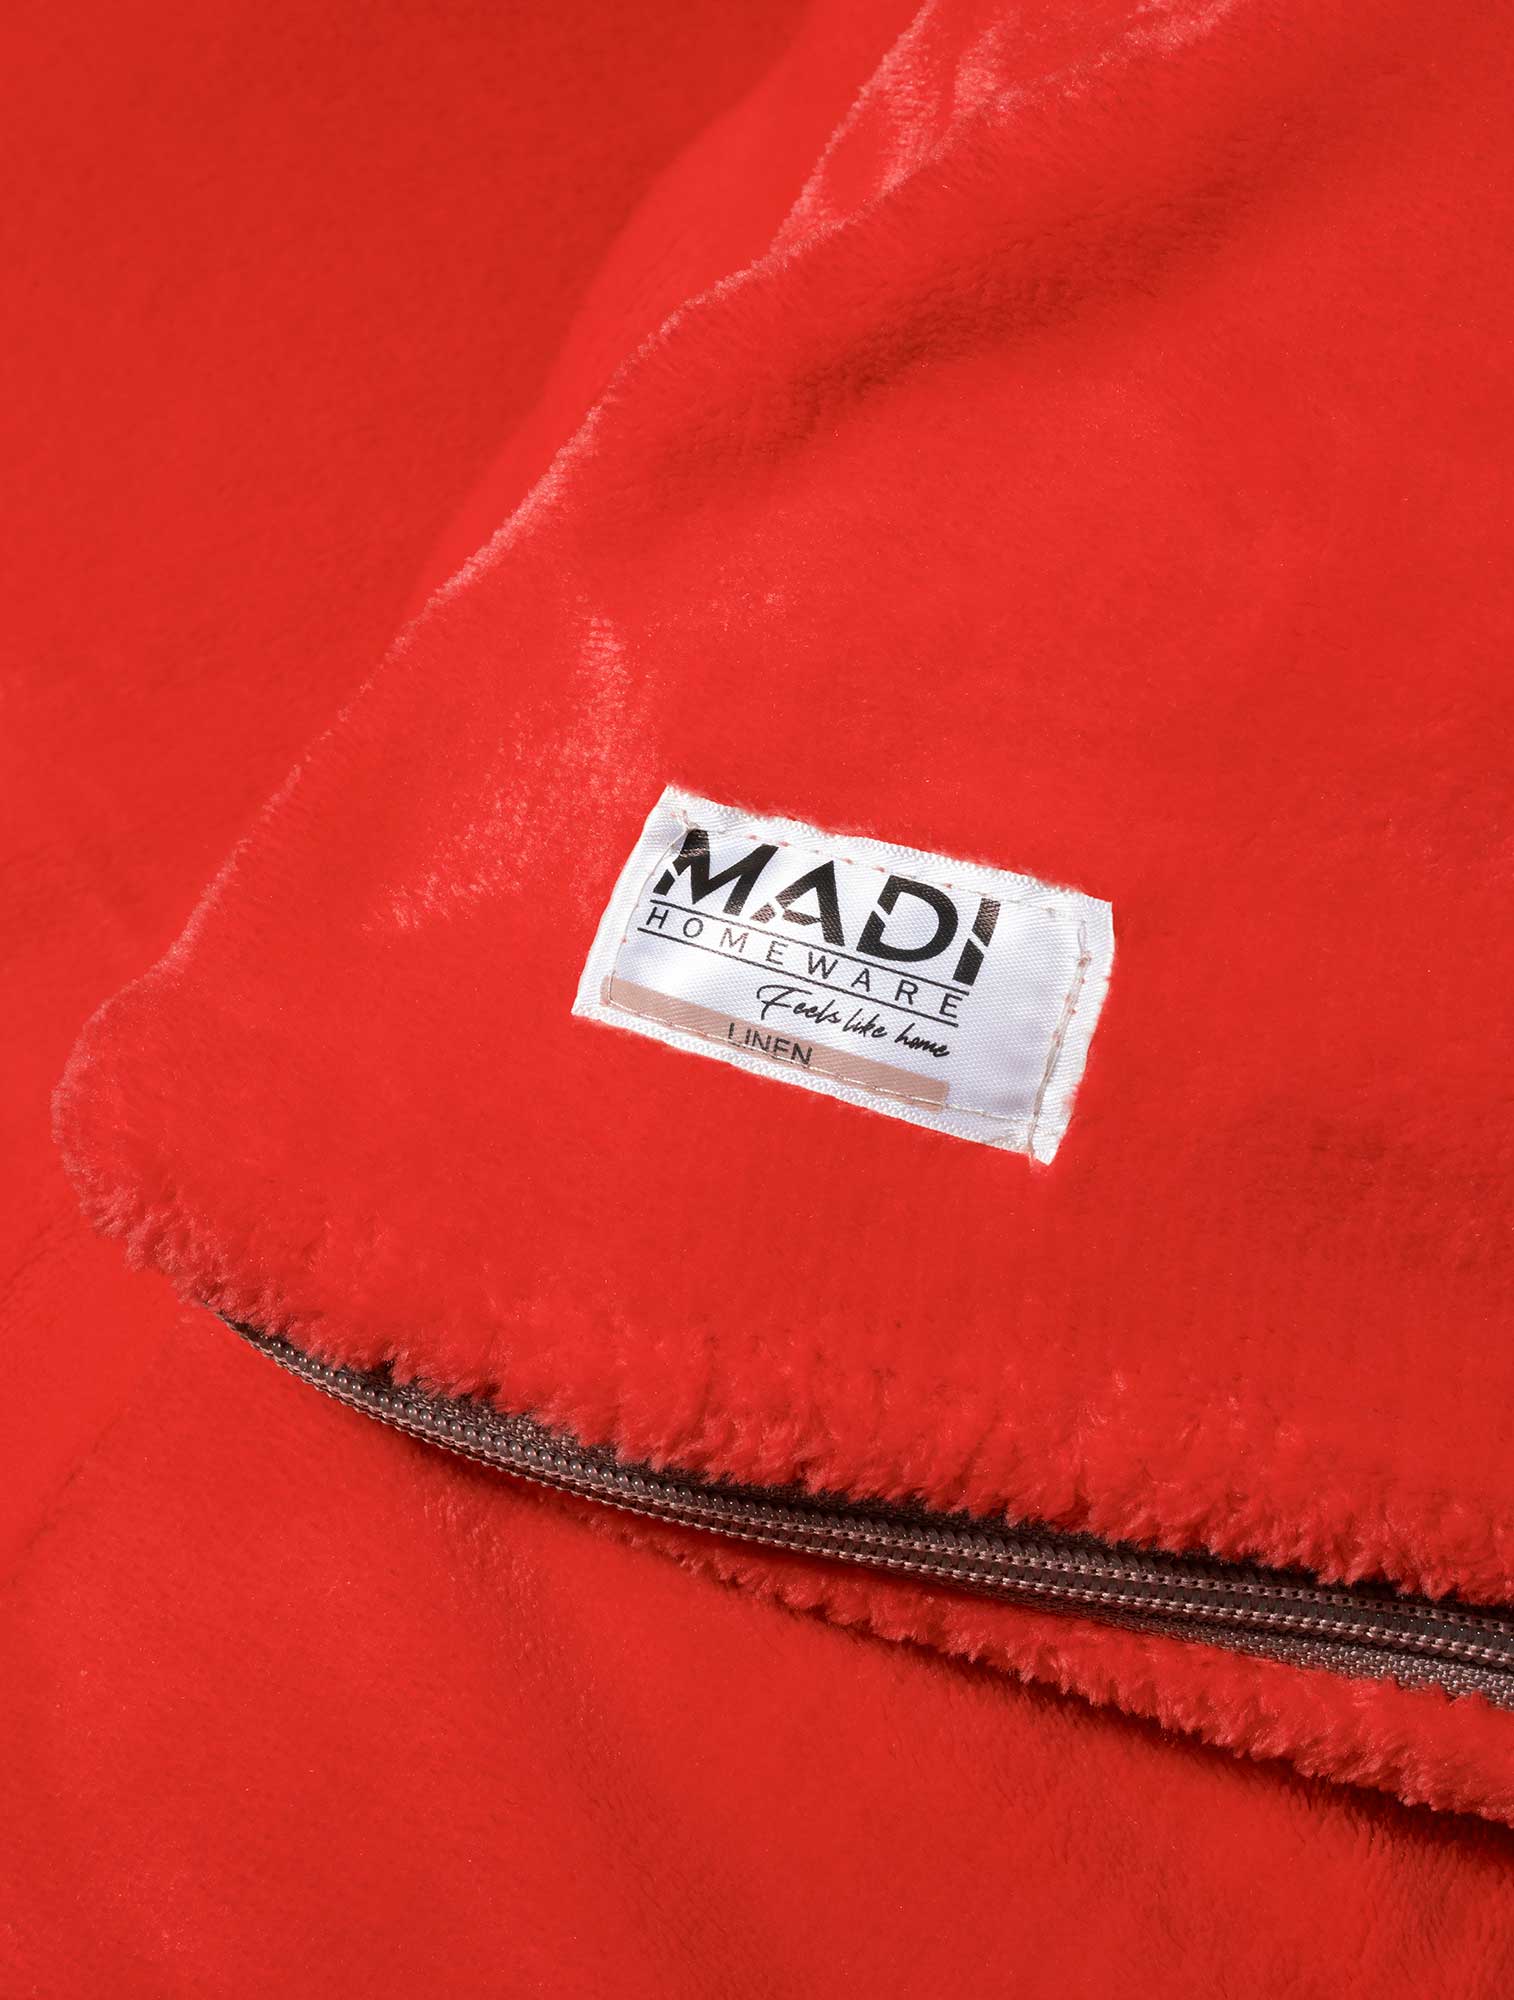 Παπλωματοθήκη DULL RED από την εταιρεία Madi